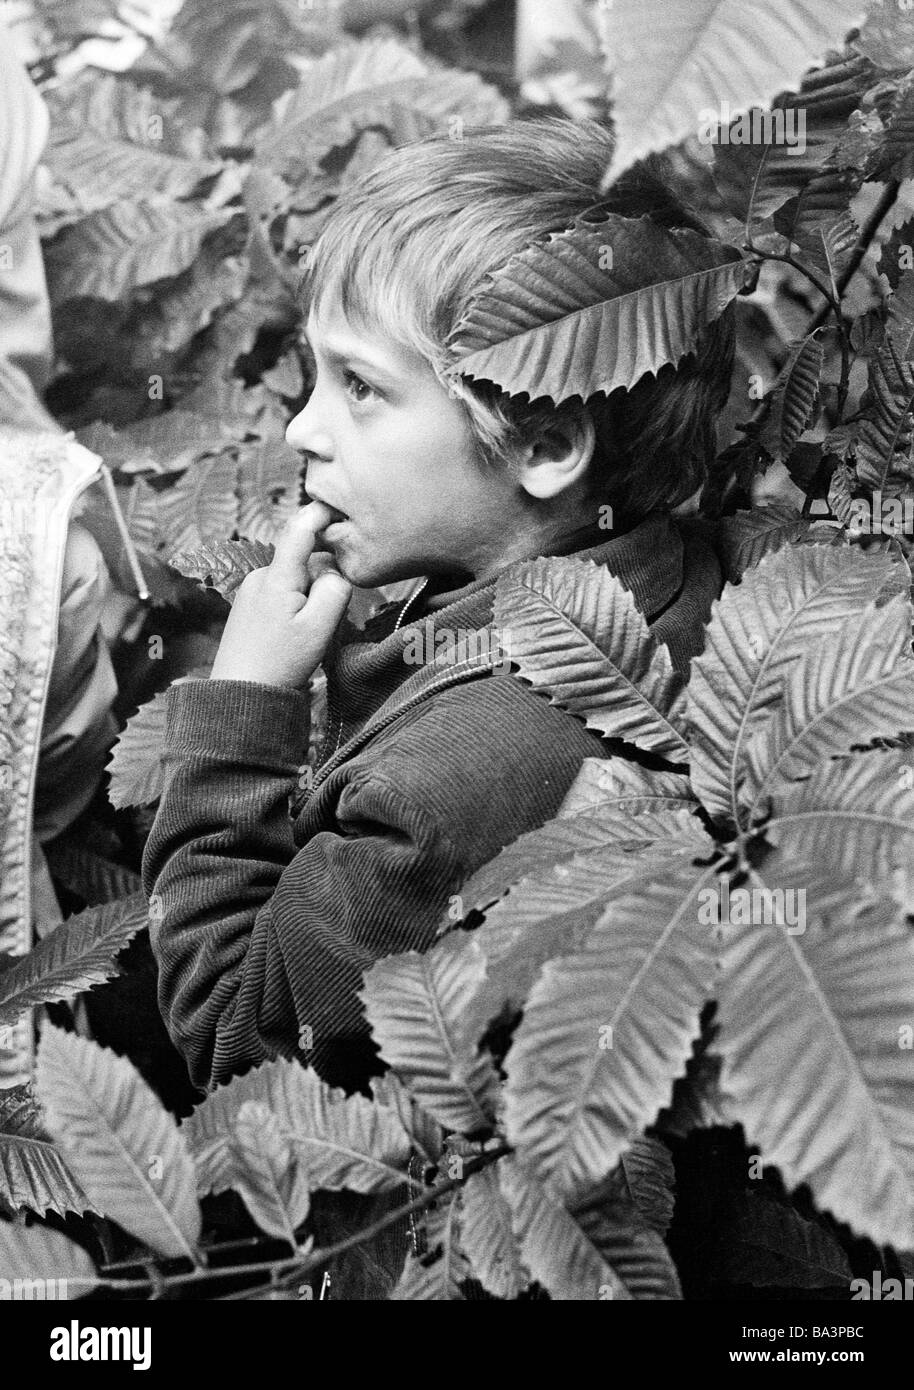 Negli anni settanta, foto in bianco e nero, persone, bambini, bambini trattare, Little Boy sorge in un arbusteto e incantato circa una mostra, un dito nella sua bocca, di età compresa tra i 4 ed i 7 anni Foto Stock